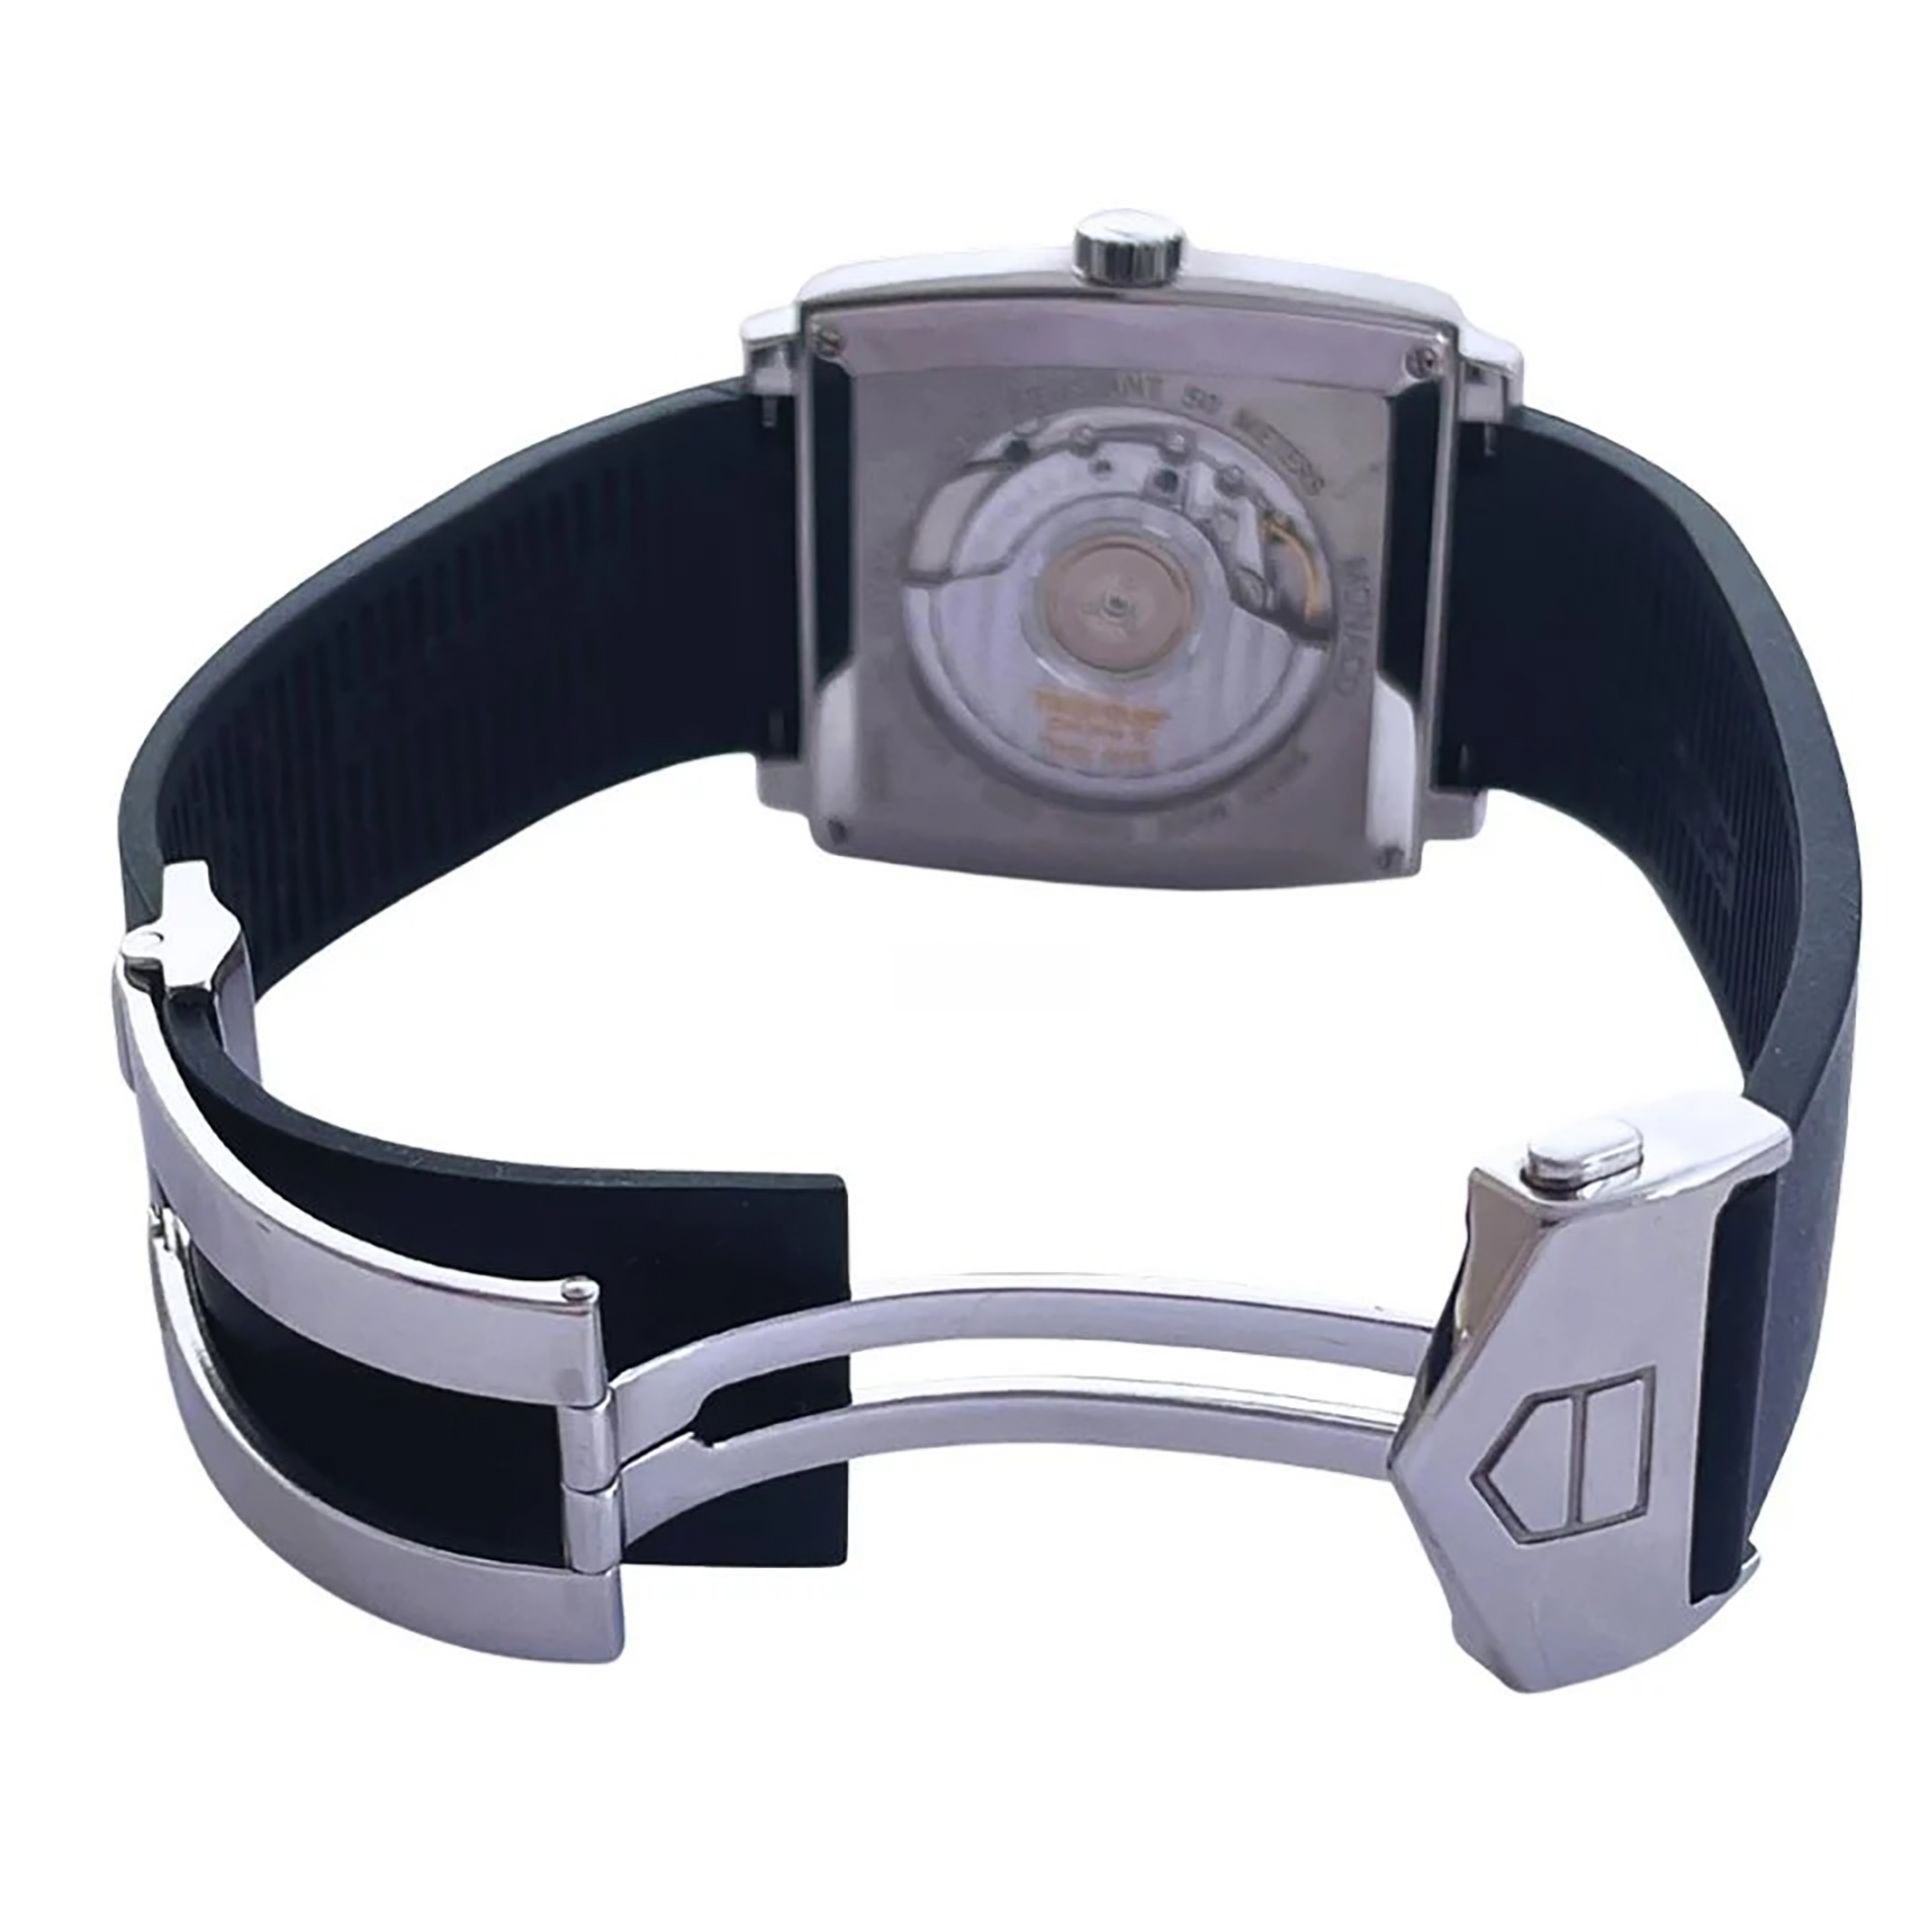 Tag Heuer Monaco Deep Blue model wristwatch in steel, for men, year 2007 - Image 7 of 7